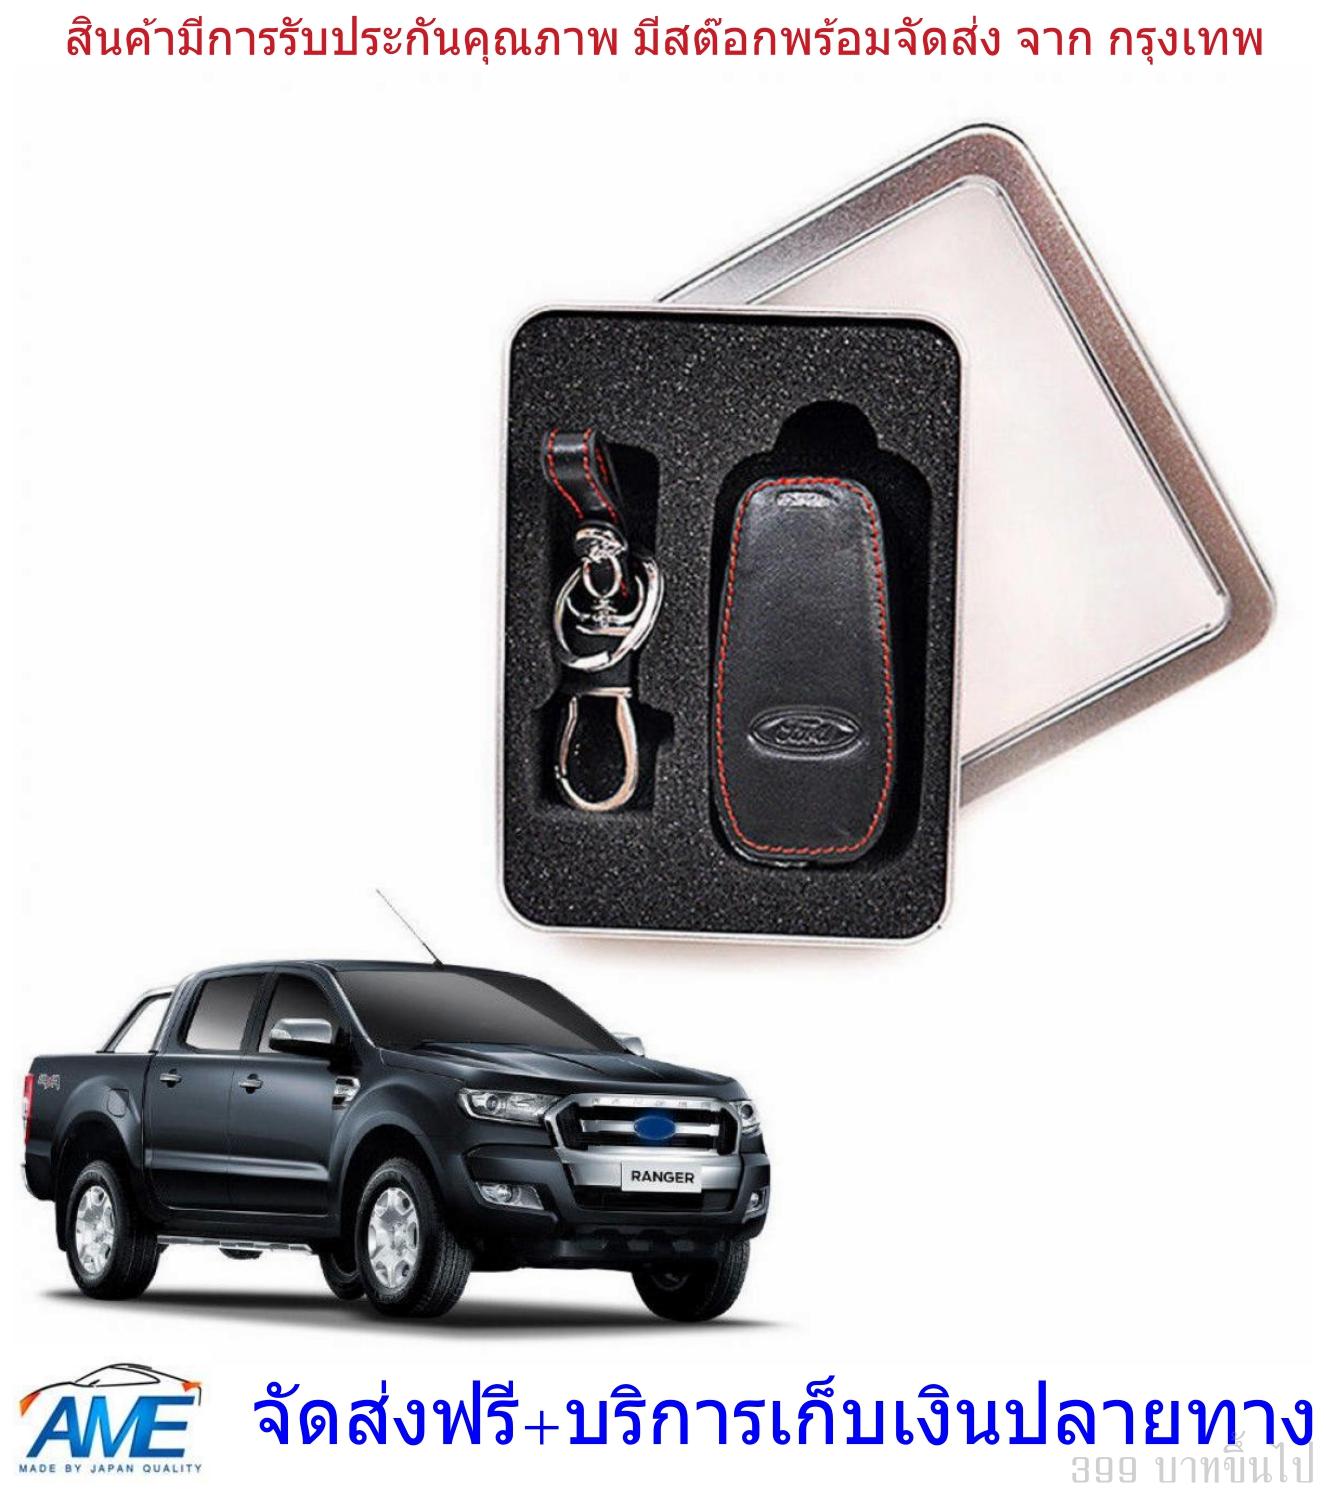 ปลอกใส่กุญแจ ซองกุญแจ Ford ranger เรนเจอร์ รุ่นปี 2012+ สีดำ หนัง ใส่รุ่น raptor ได้